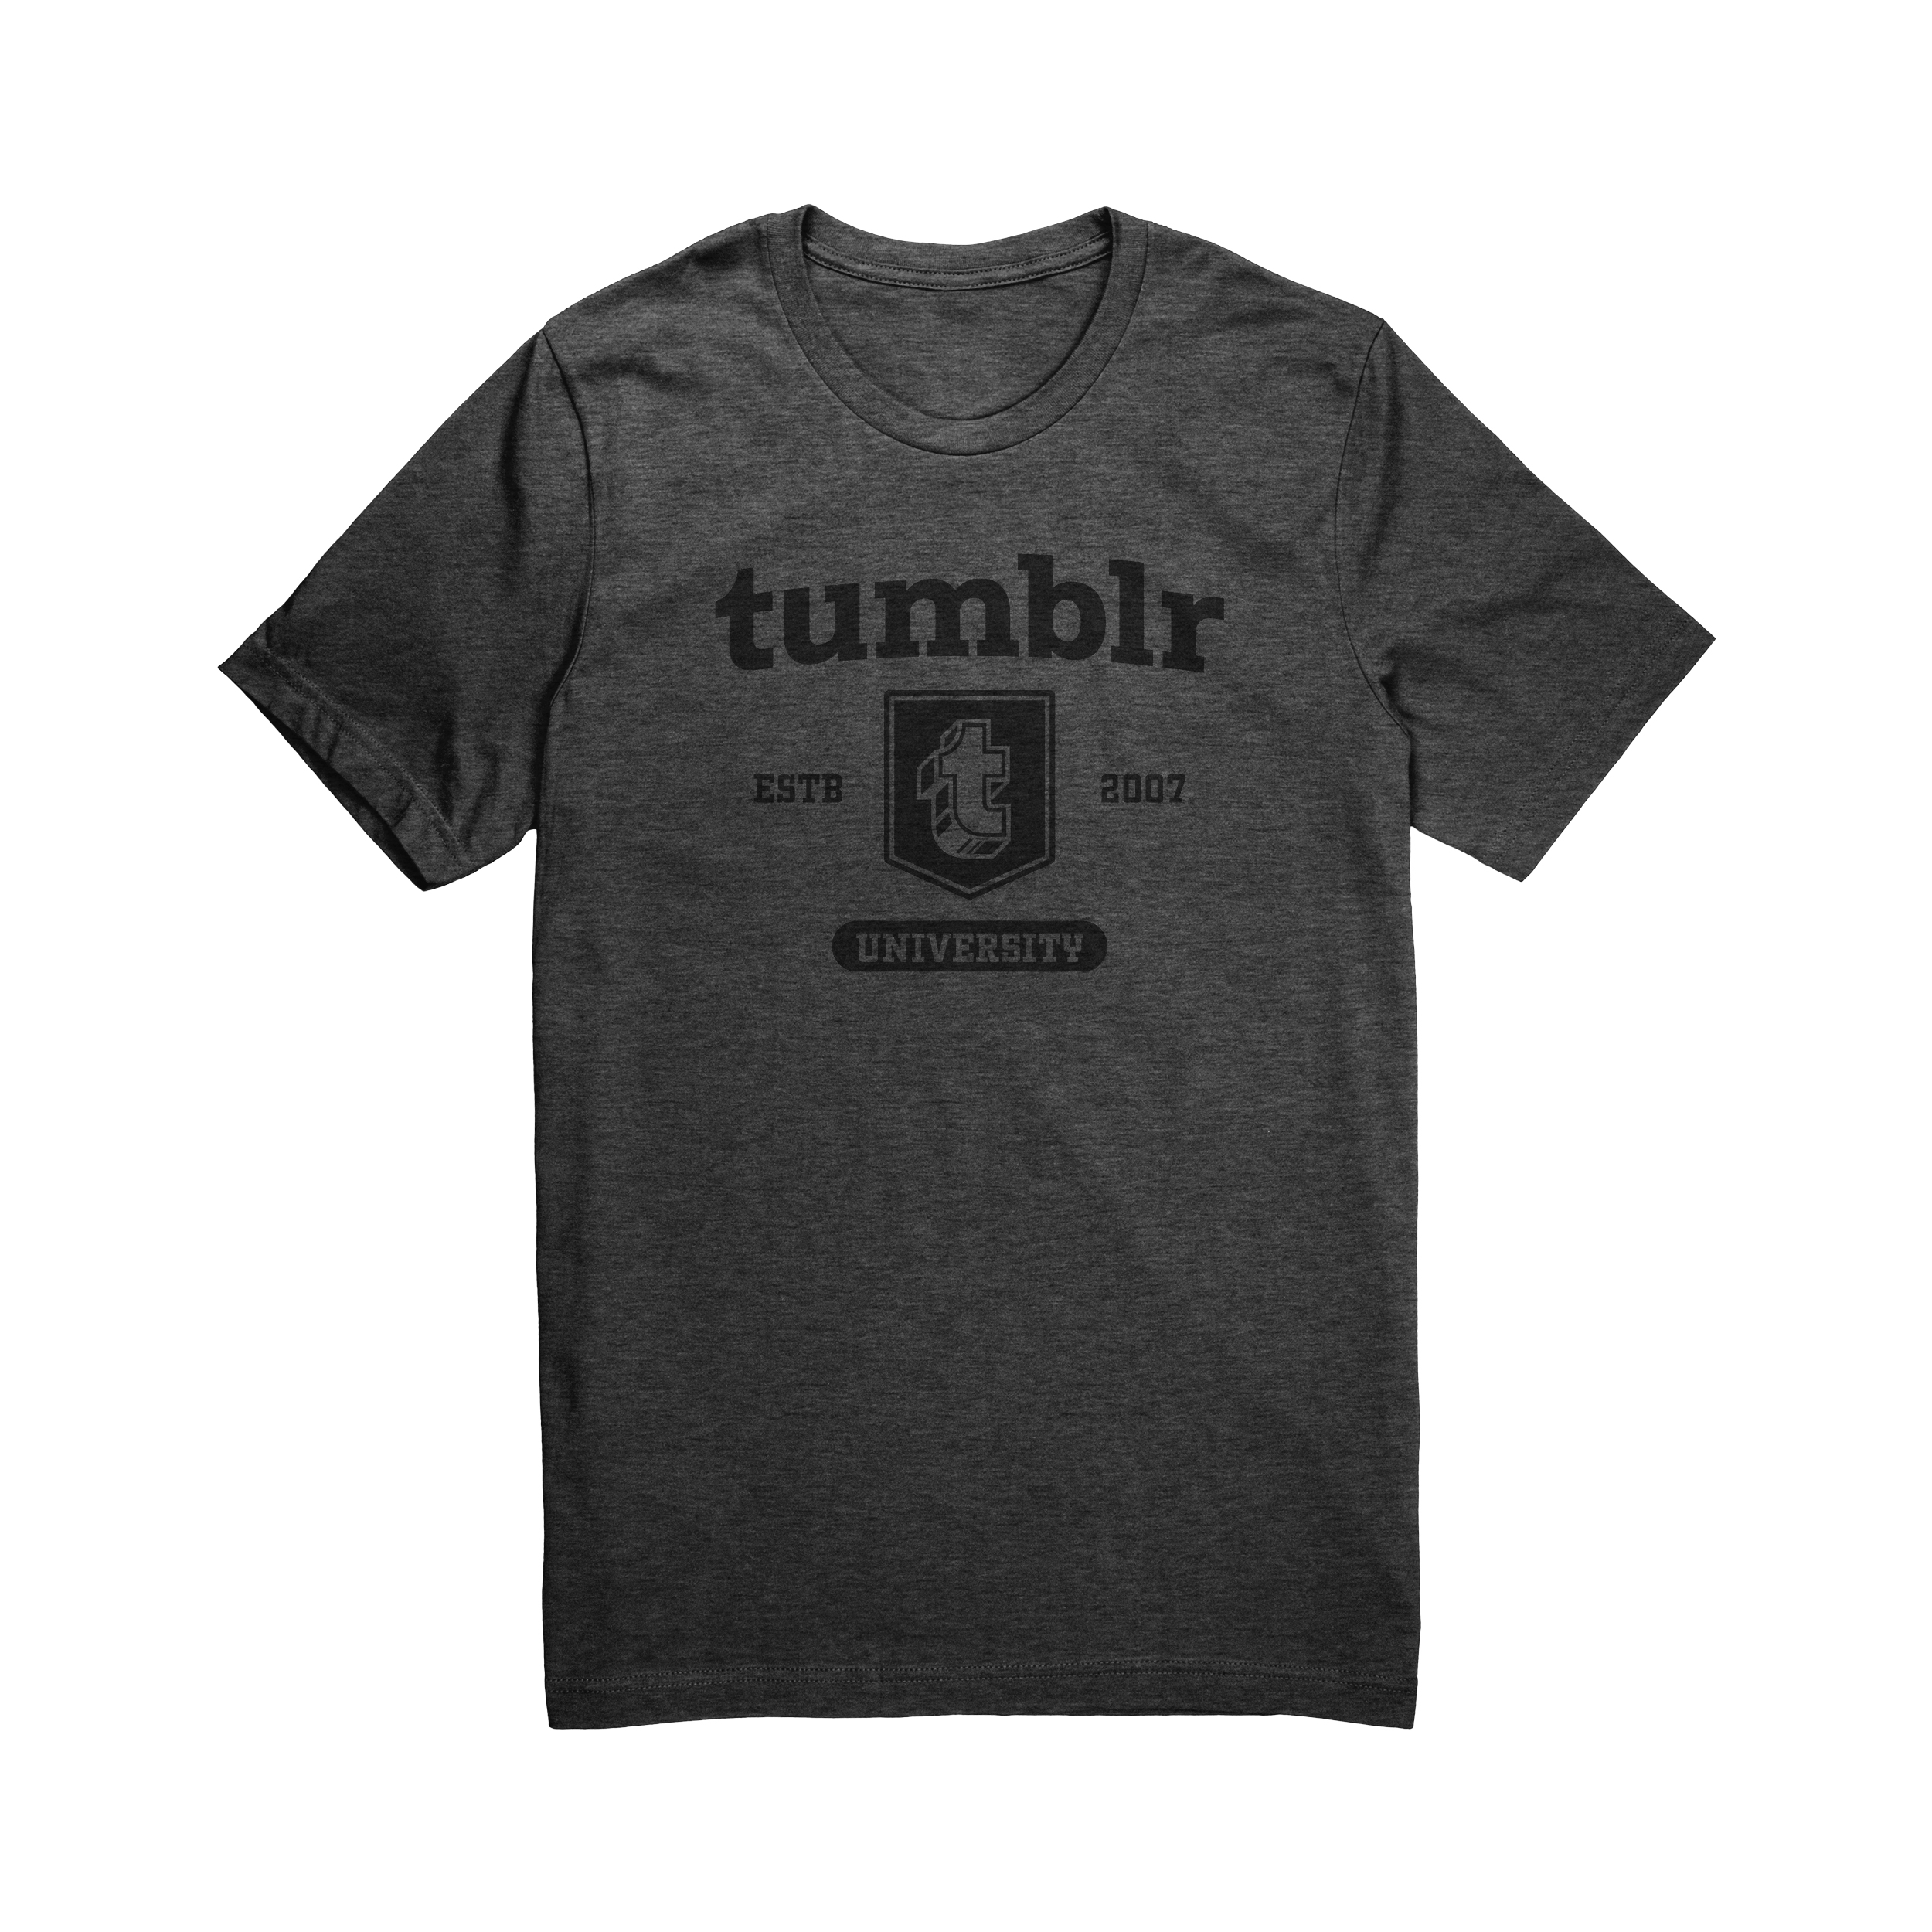 Tumblr University t-shirt | Tumblr Shop